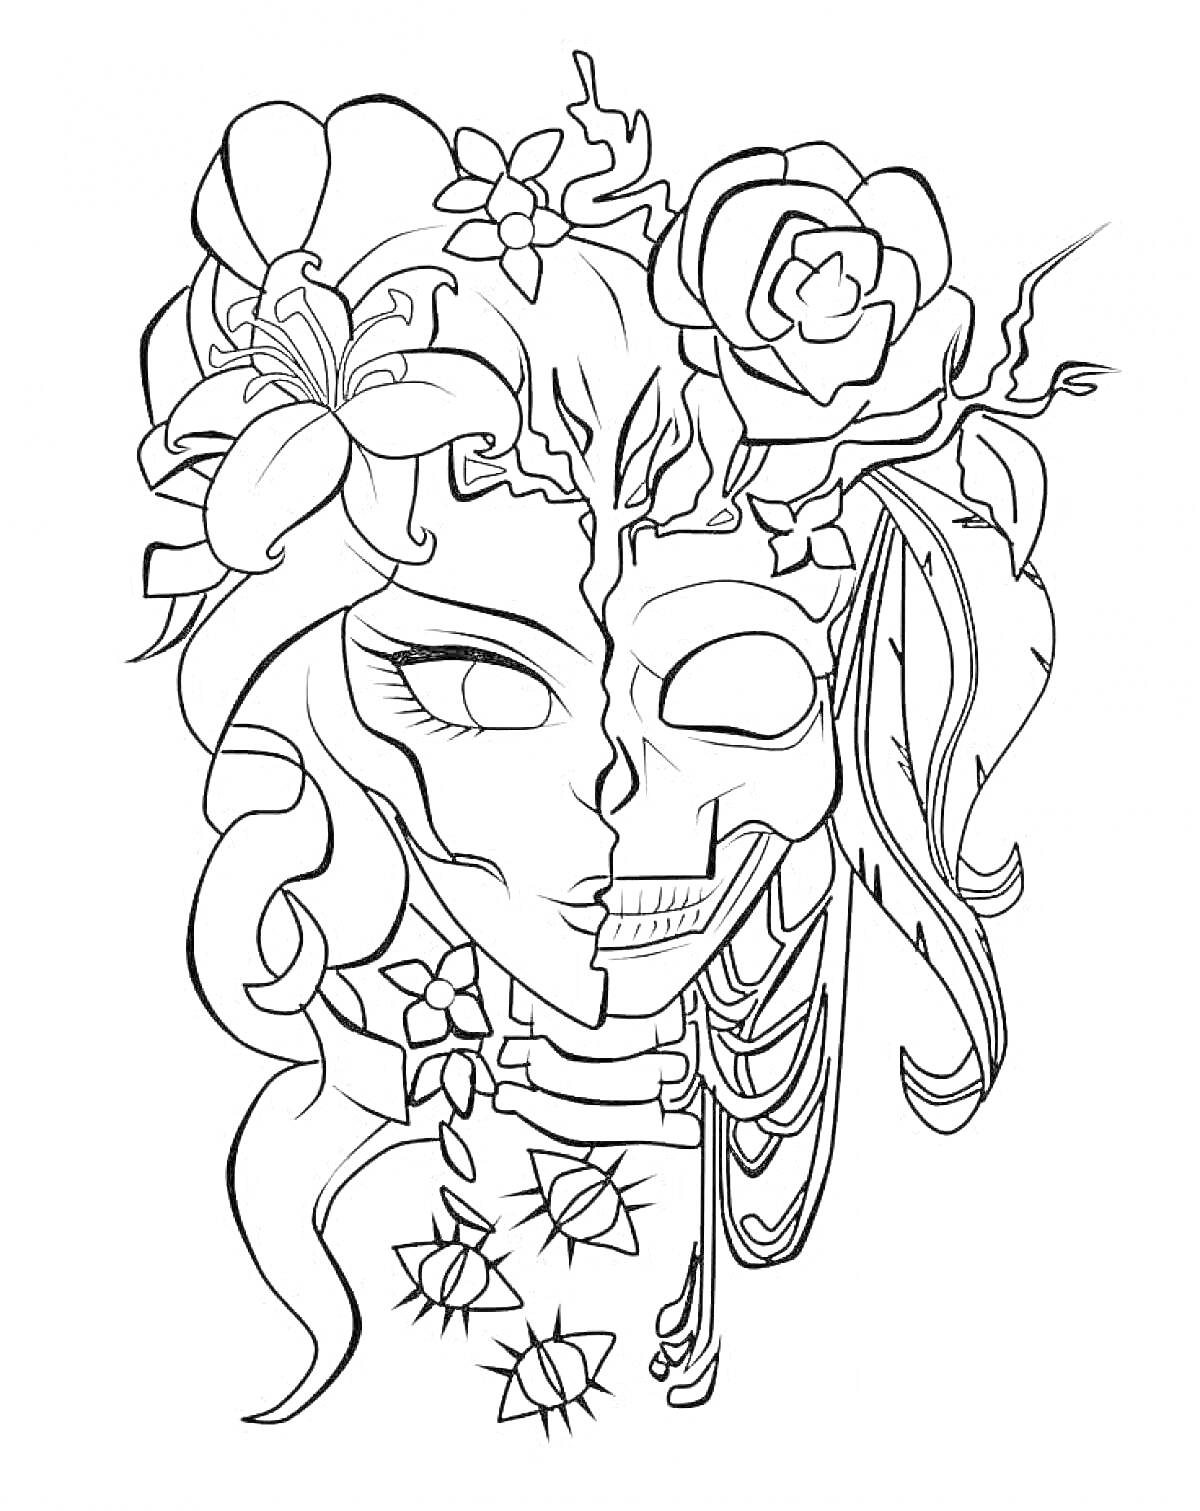 Раскраска Полу-человеческое лицо с маской черепа, украшенное цветами и листьями